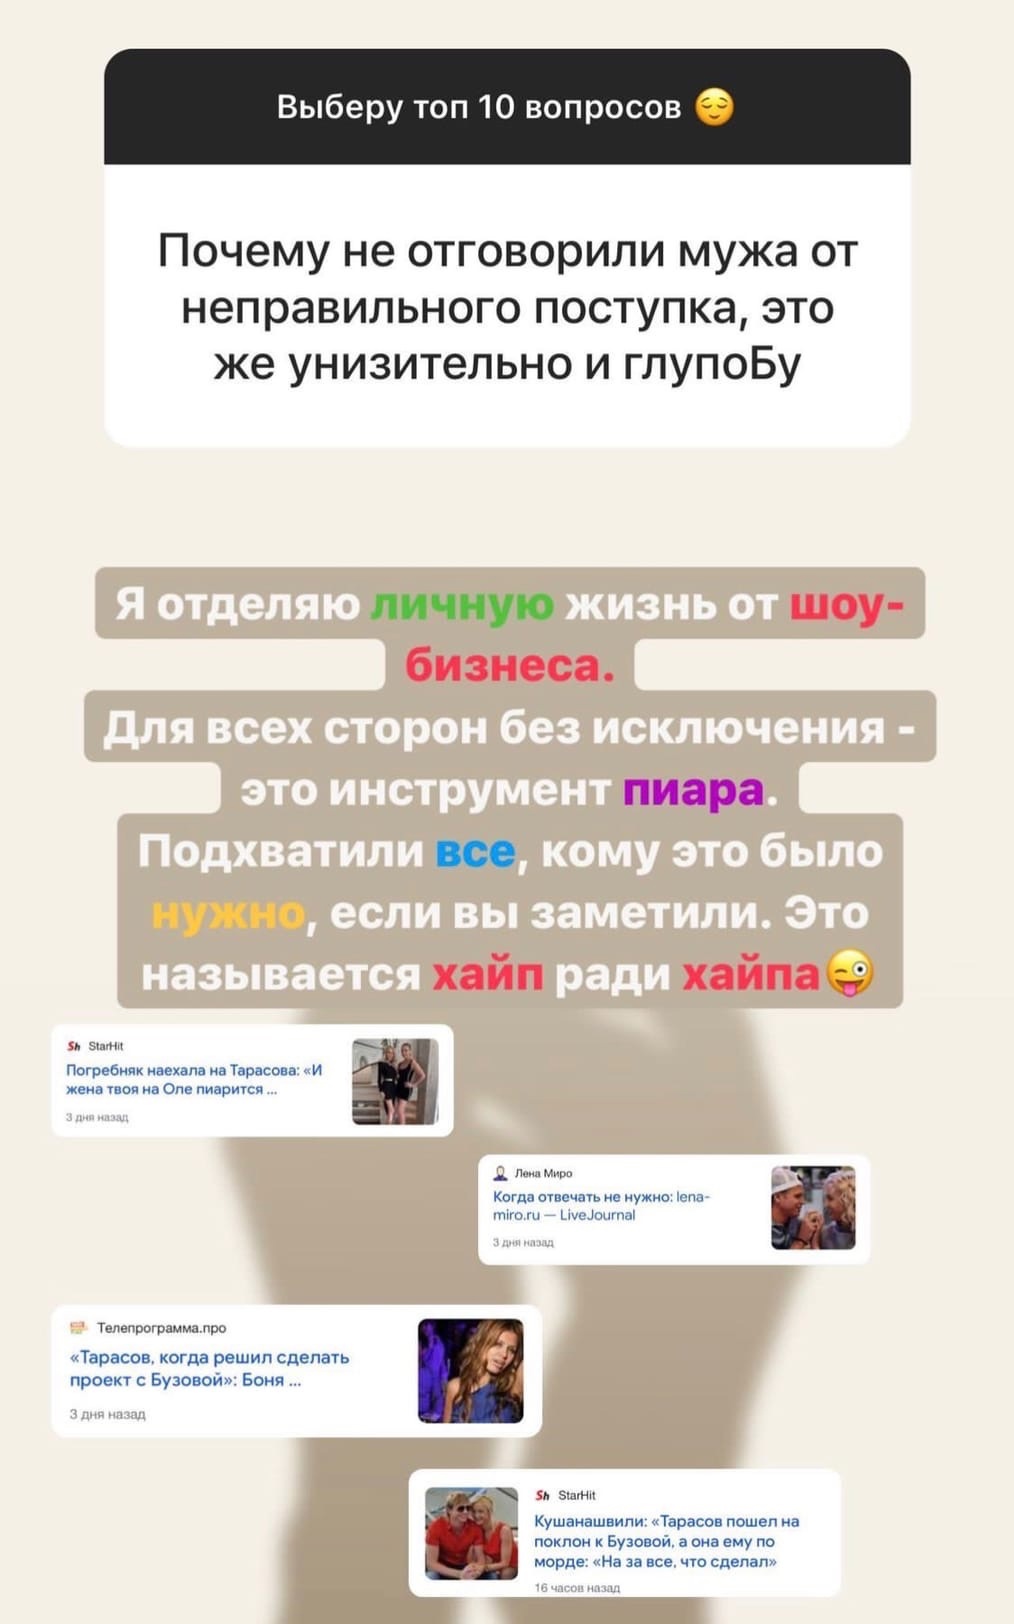 "Хайп ради хайпа": Анастасия Костенко прокомментировала попытку Дмитрия Тарасова помириться с Ольгой Бузовой
